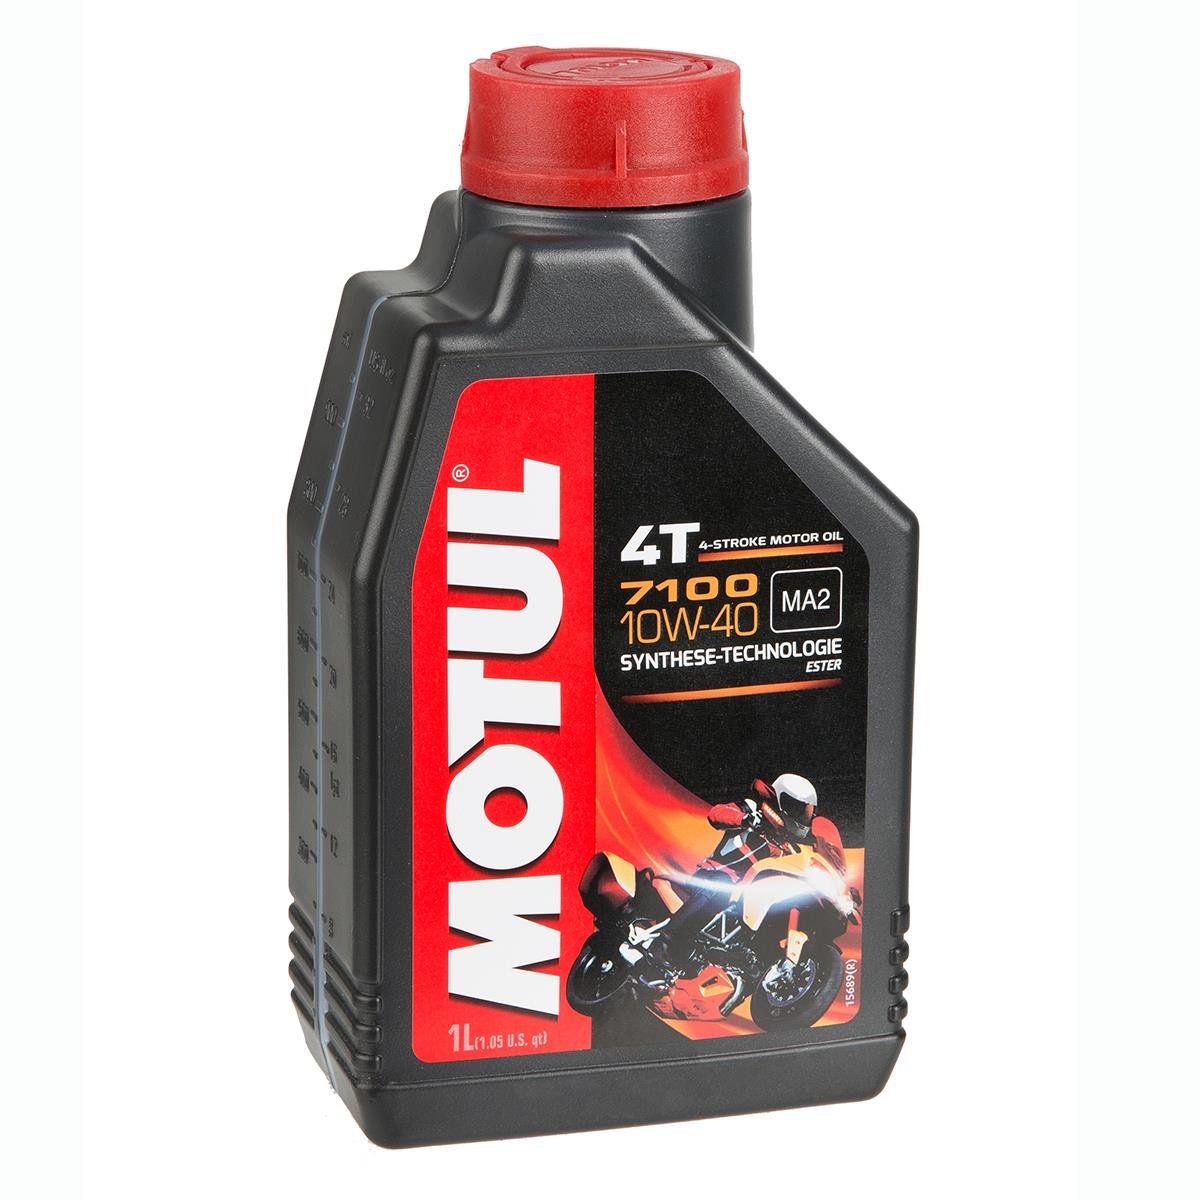 Motul 710 2T Motor Oil - Set of 4 1-Gallon Bottles France